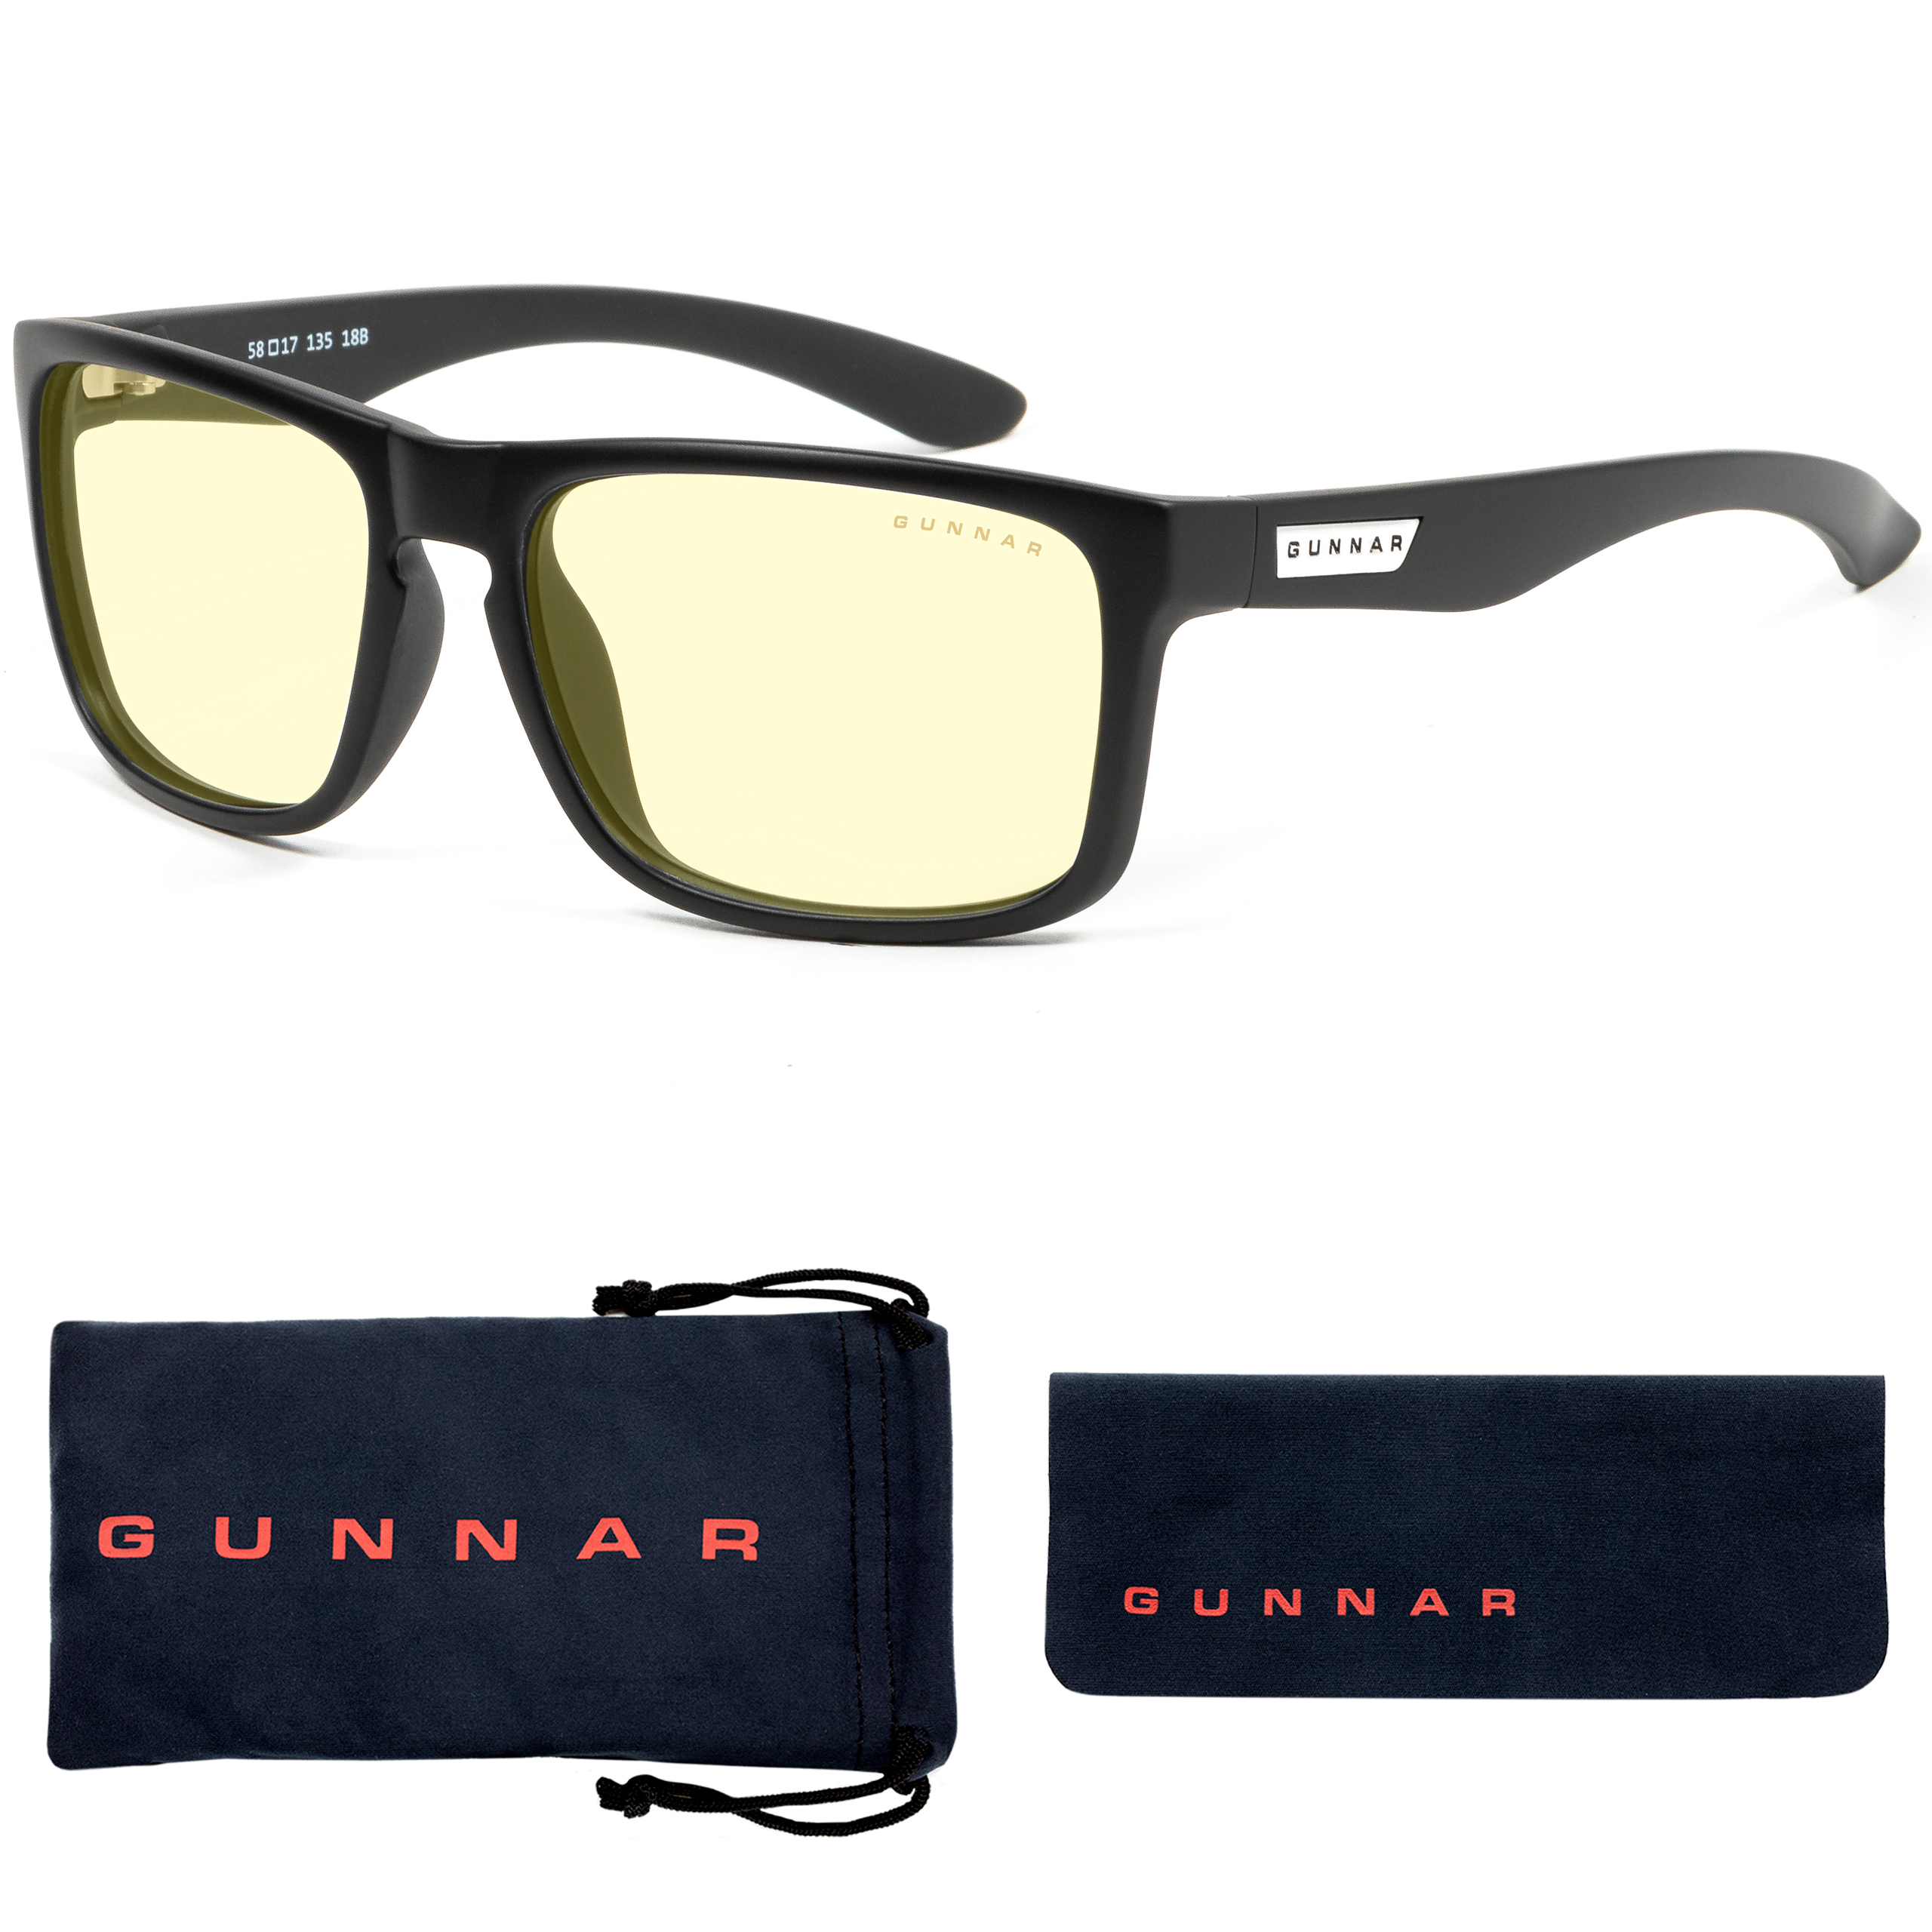 GUNNAR Intercept, Onyx Rahmen, 1.0, + Blaulichtfilter, Tönung- Stärke Premium, Amber UV-Schutz, Gaming Brille